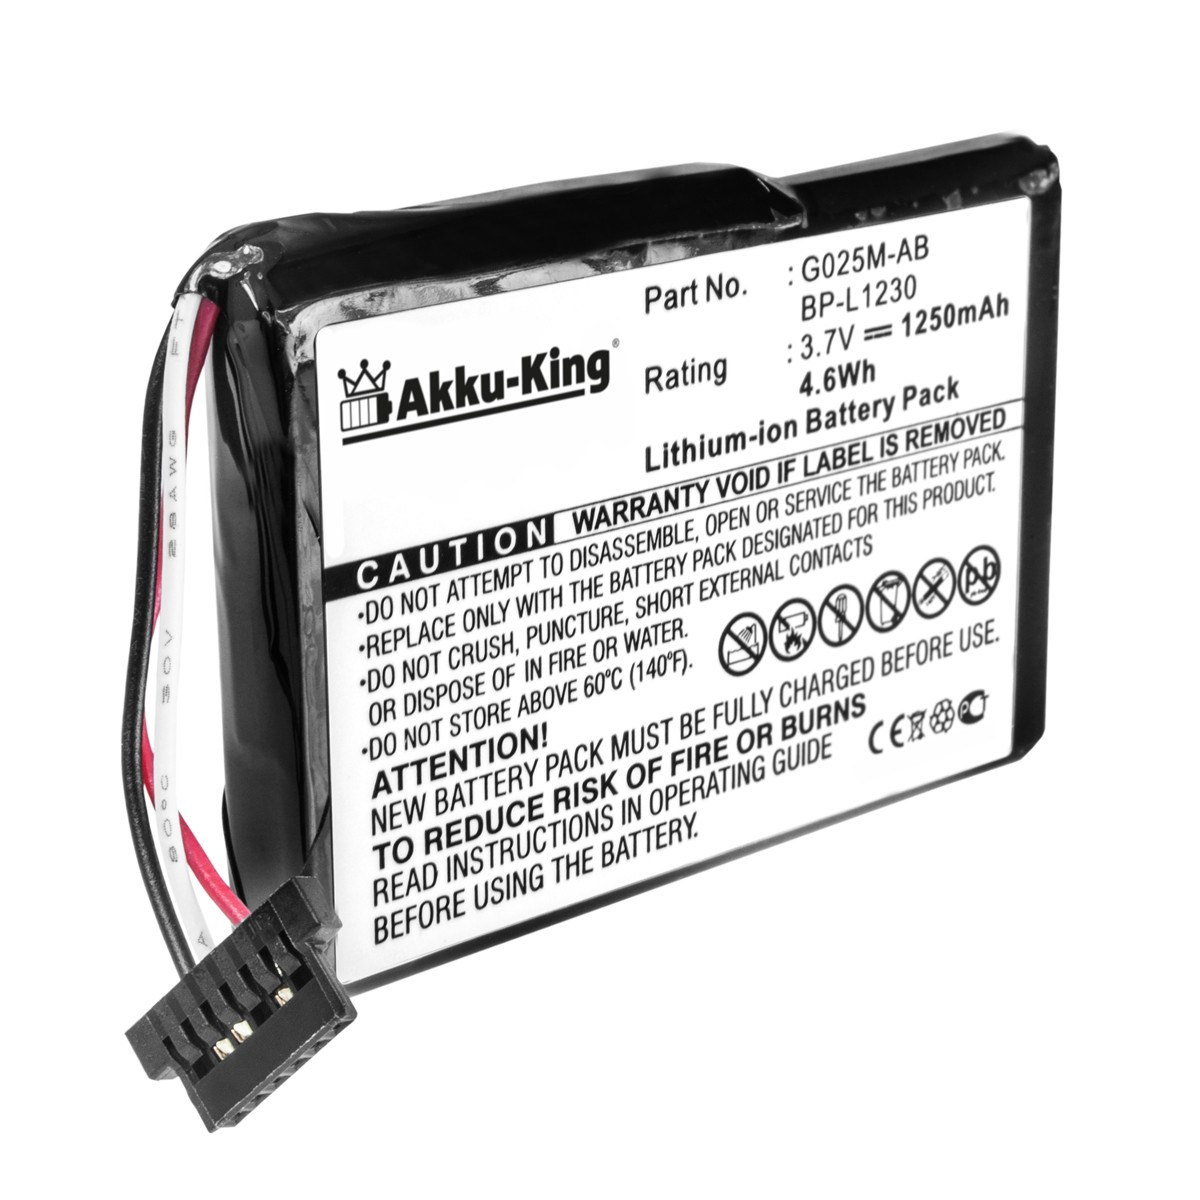 AKKU-KING Akku kompatibel mit Becker Geräte-Akku, 1250mAh G025A-AB 3.7 Volt, Li-Ion